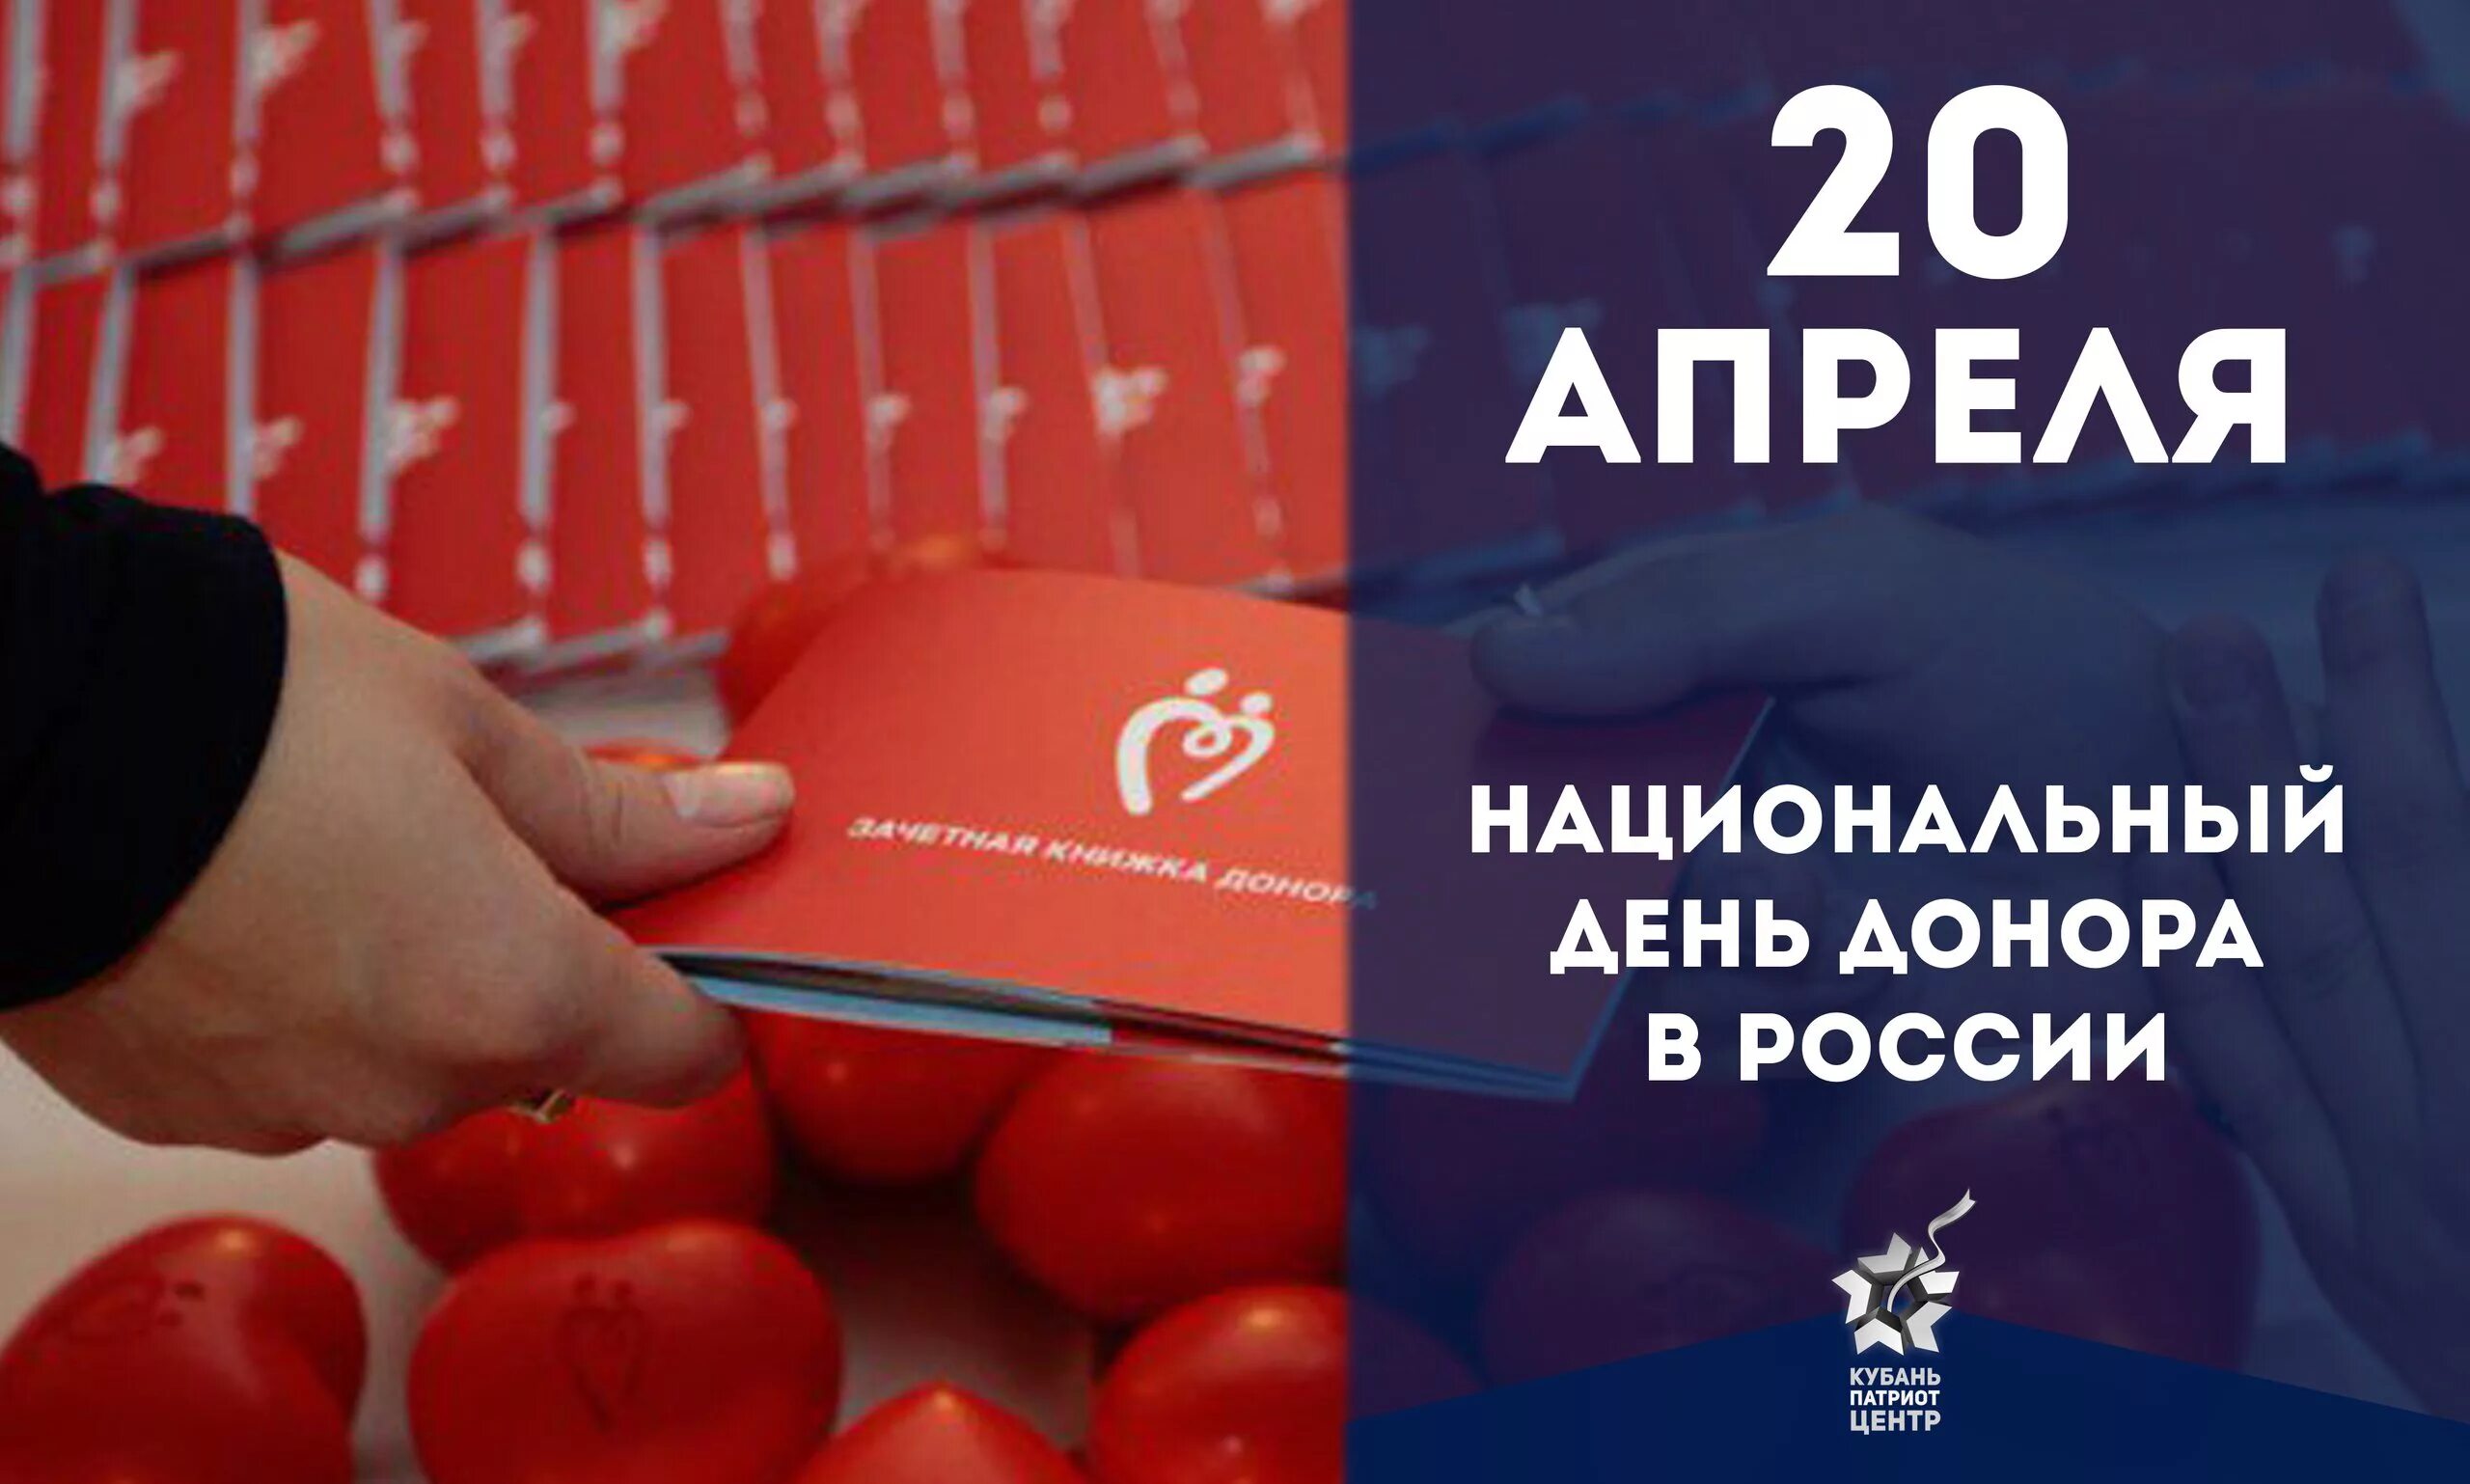 20 апреля национальный день донора в россии. Национальный день донора. 20 Апреля день донора. Национальный день донора крови в России. Открытки с днём донора 20 апреля.